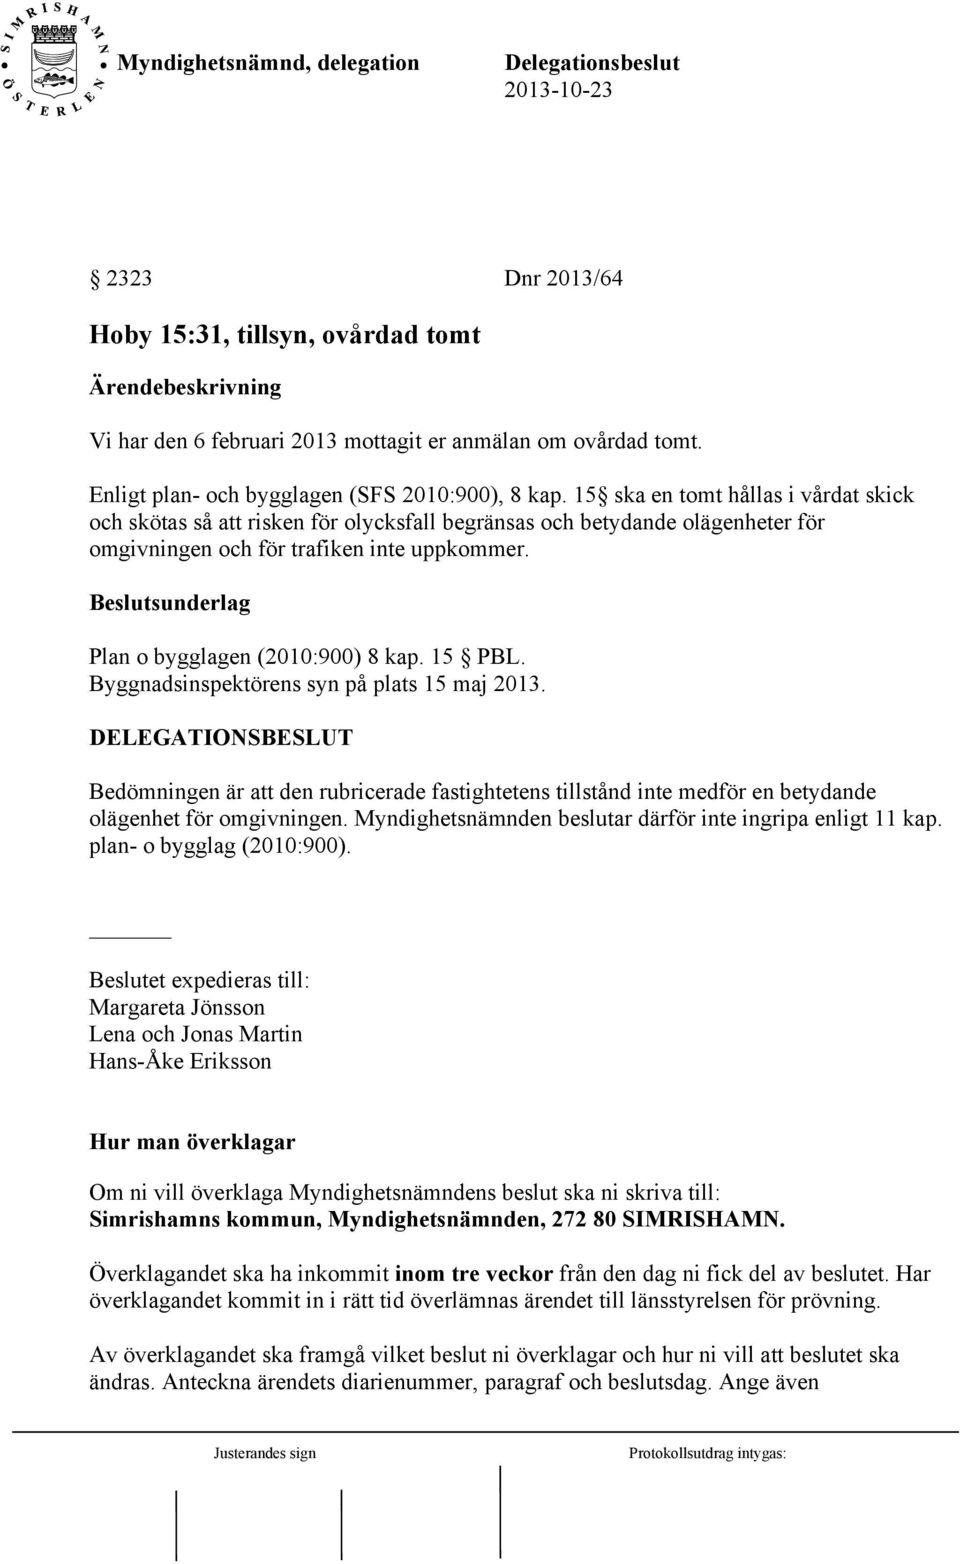 Beslutsunderlag Plan o bygglagen (2010:900) 8 kap. 15 PBL. Byggnadsinspektörens syn på plats 15 maj 2013.